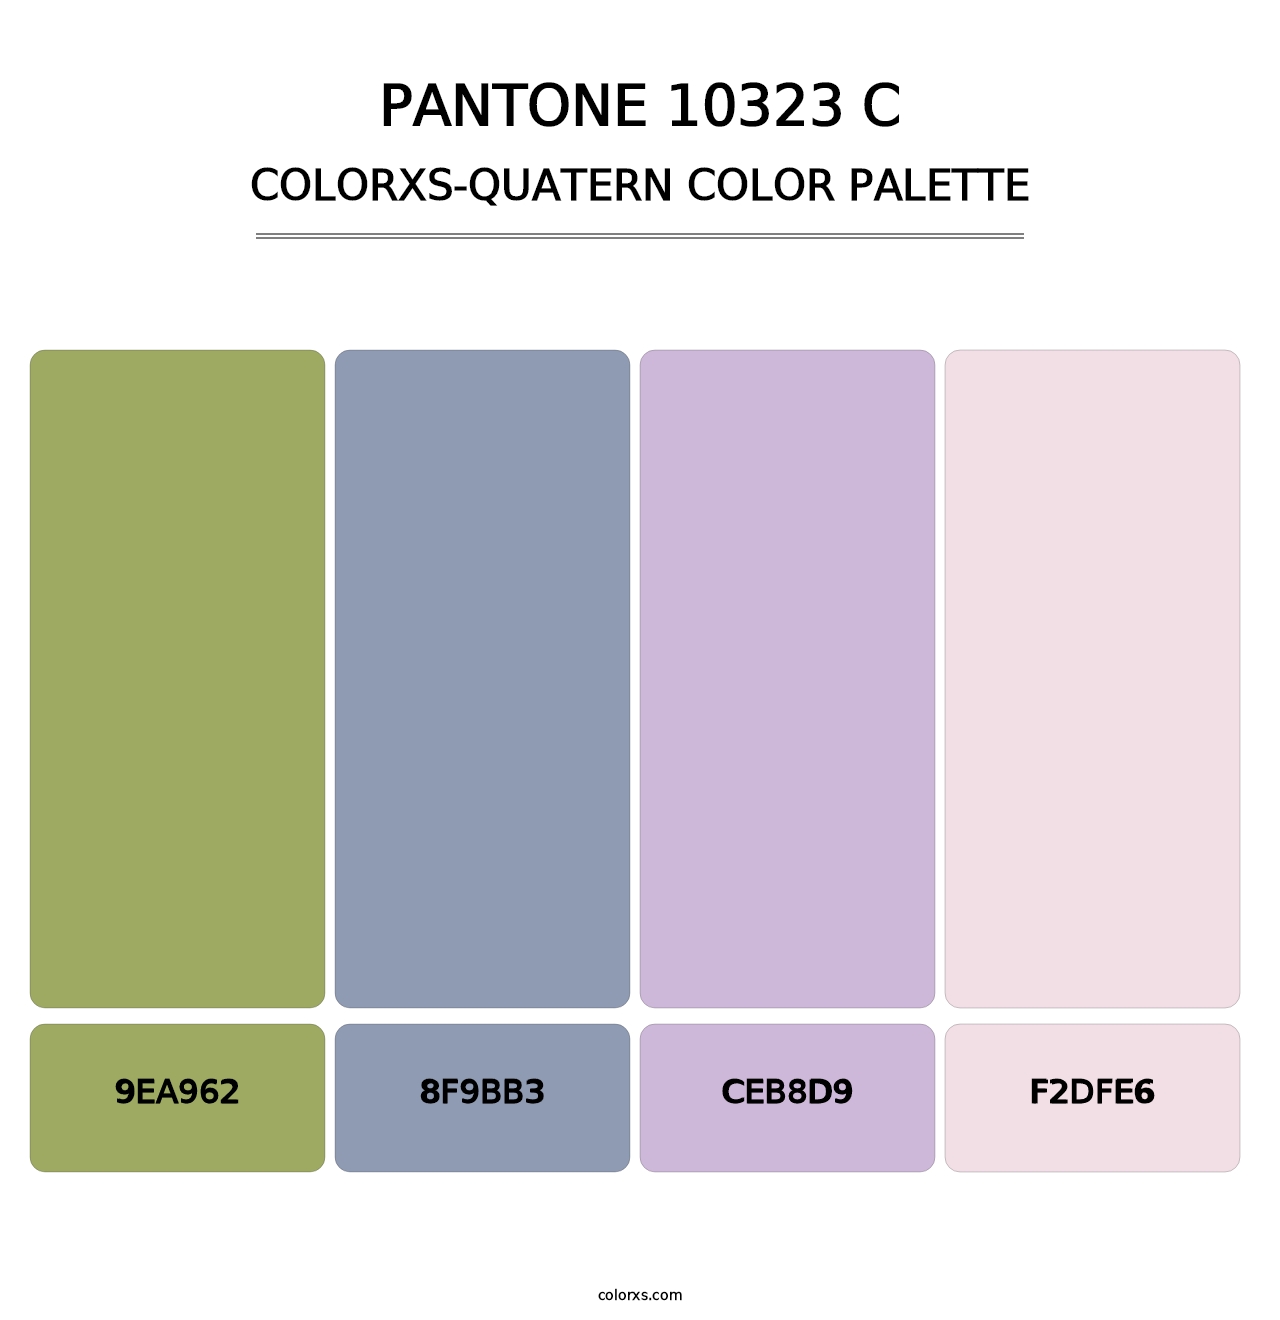 PANTONE 10323 C - Colorxs Quatern Palette